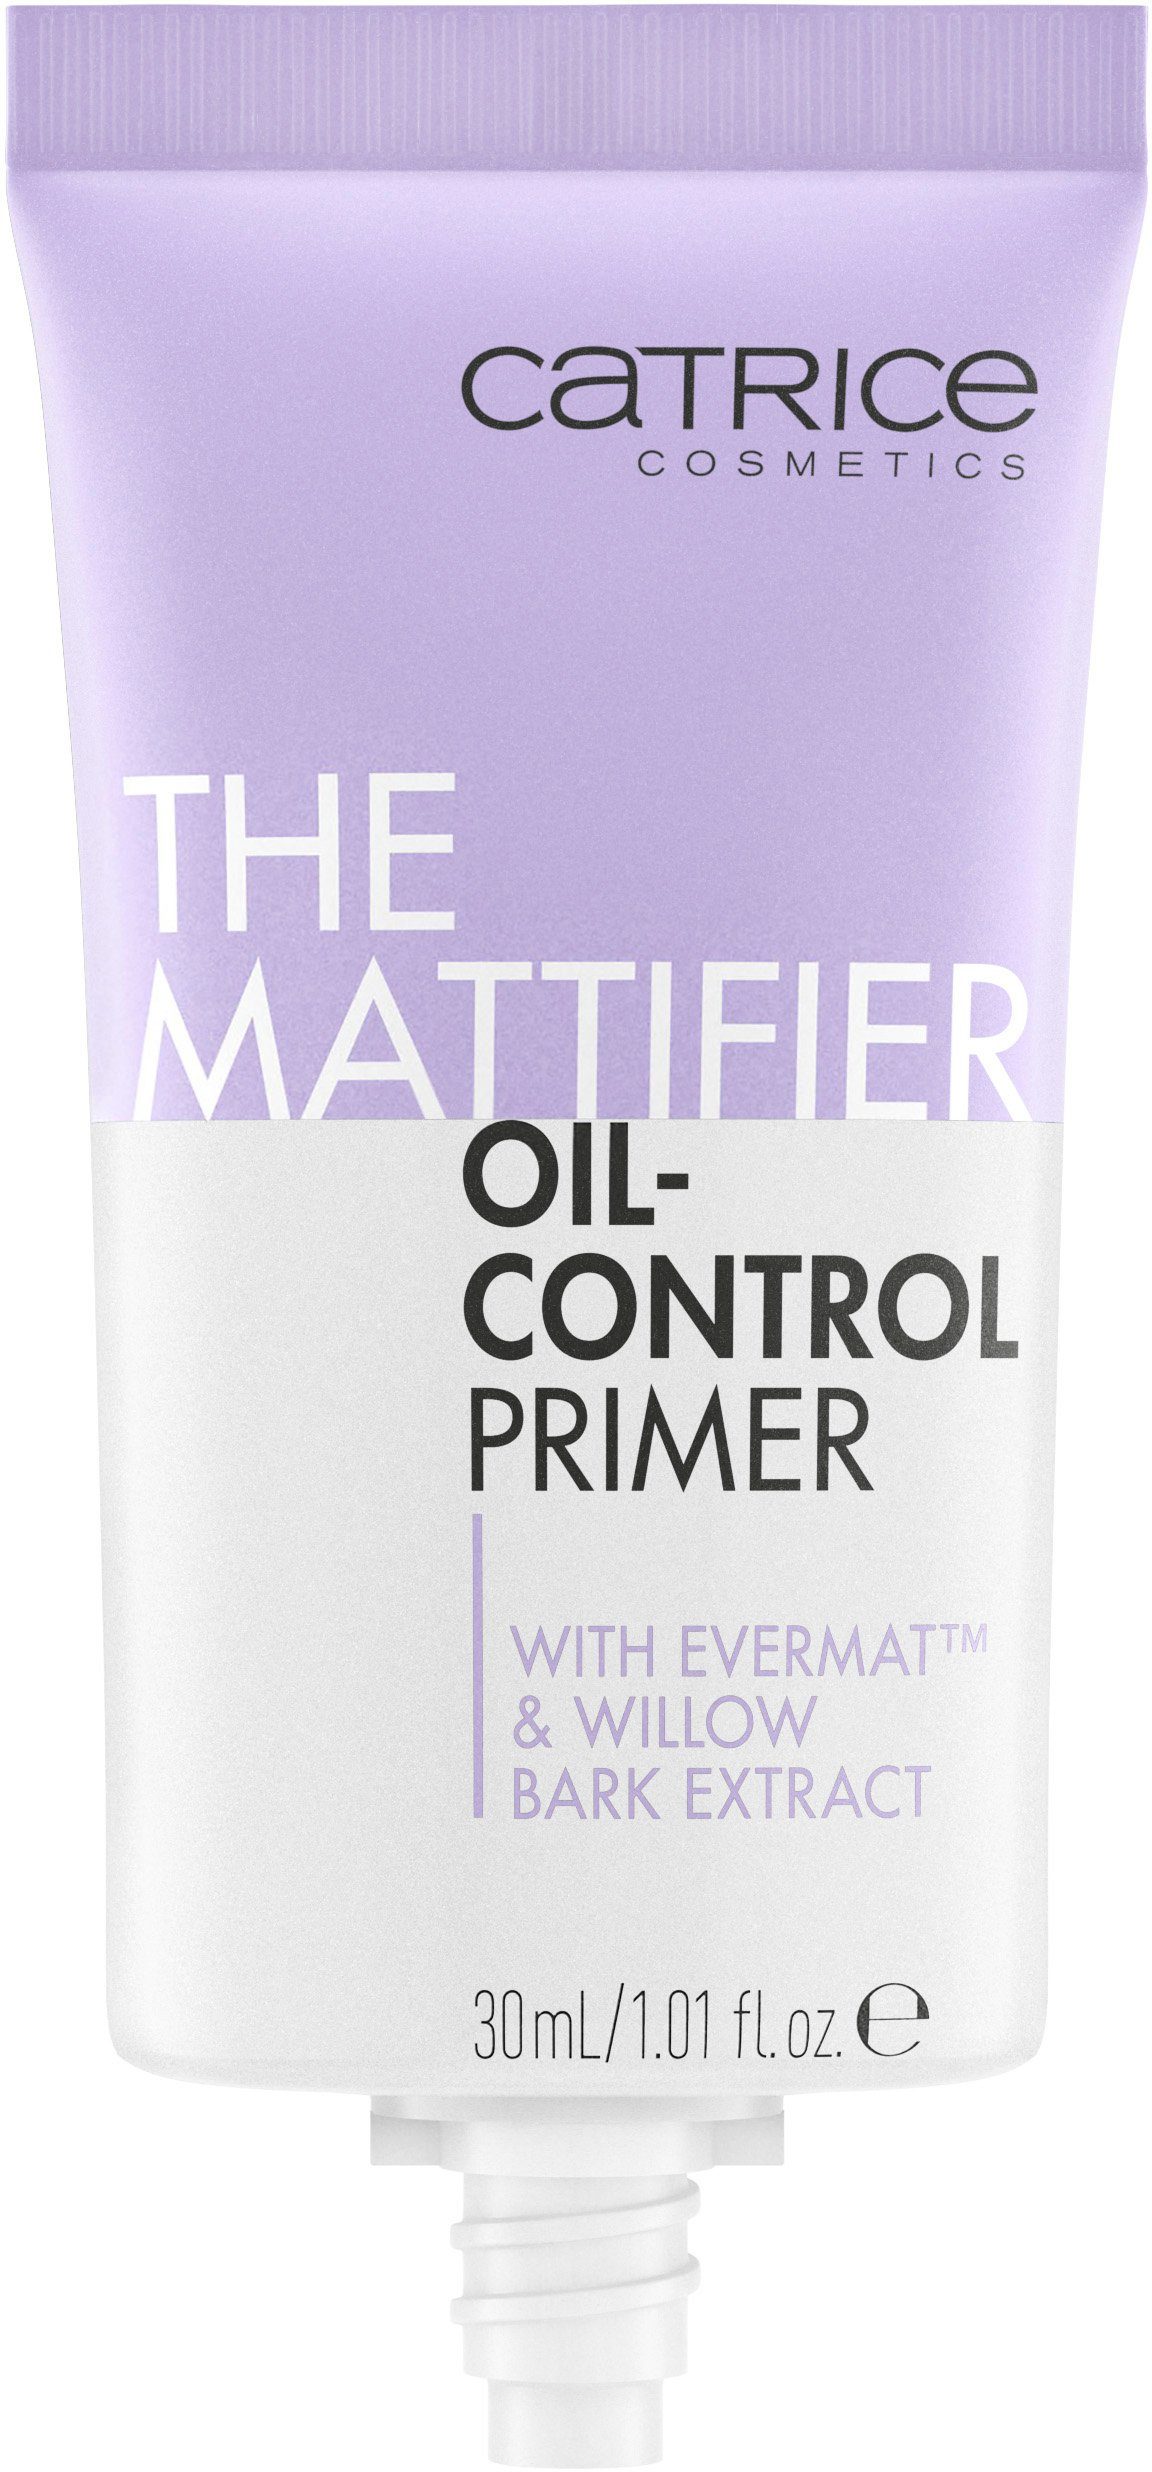 Primer Catrice Oil-Control Mattifier 3-tlg. Primer, The